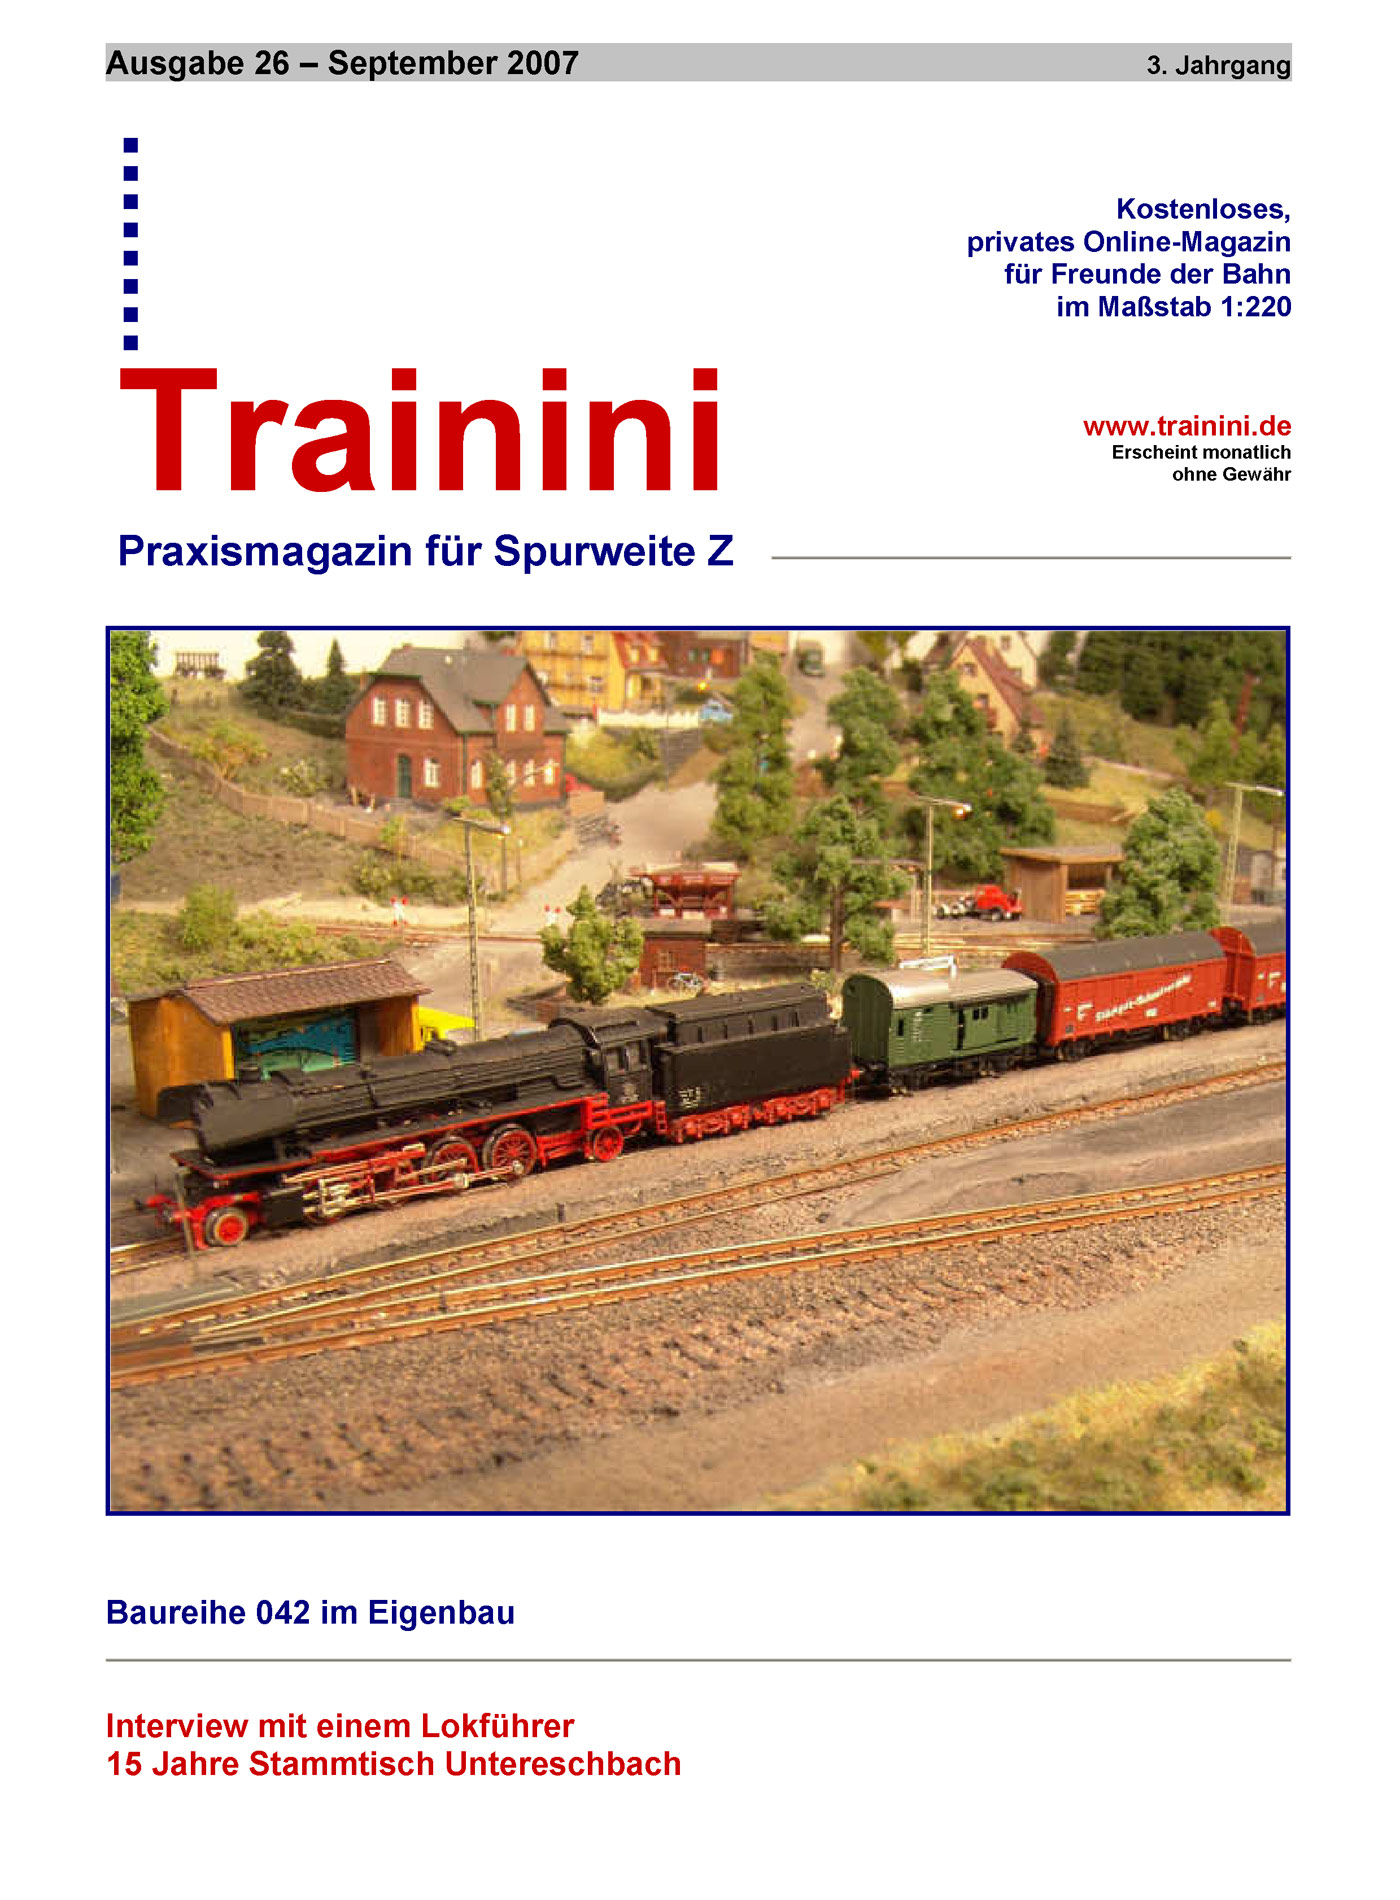 Trainini Ausgabe September 2007